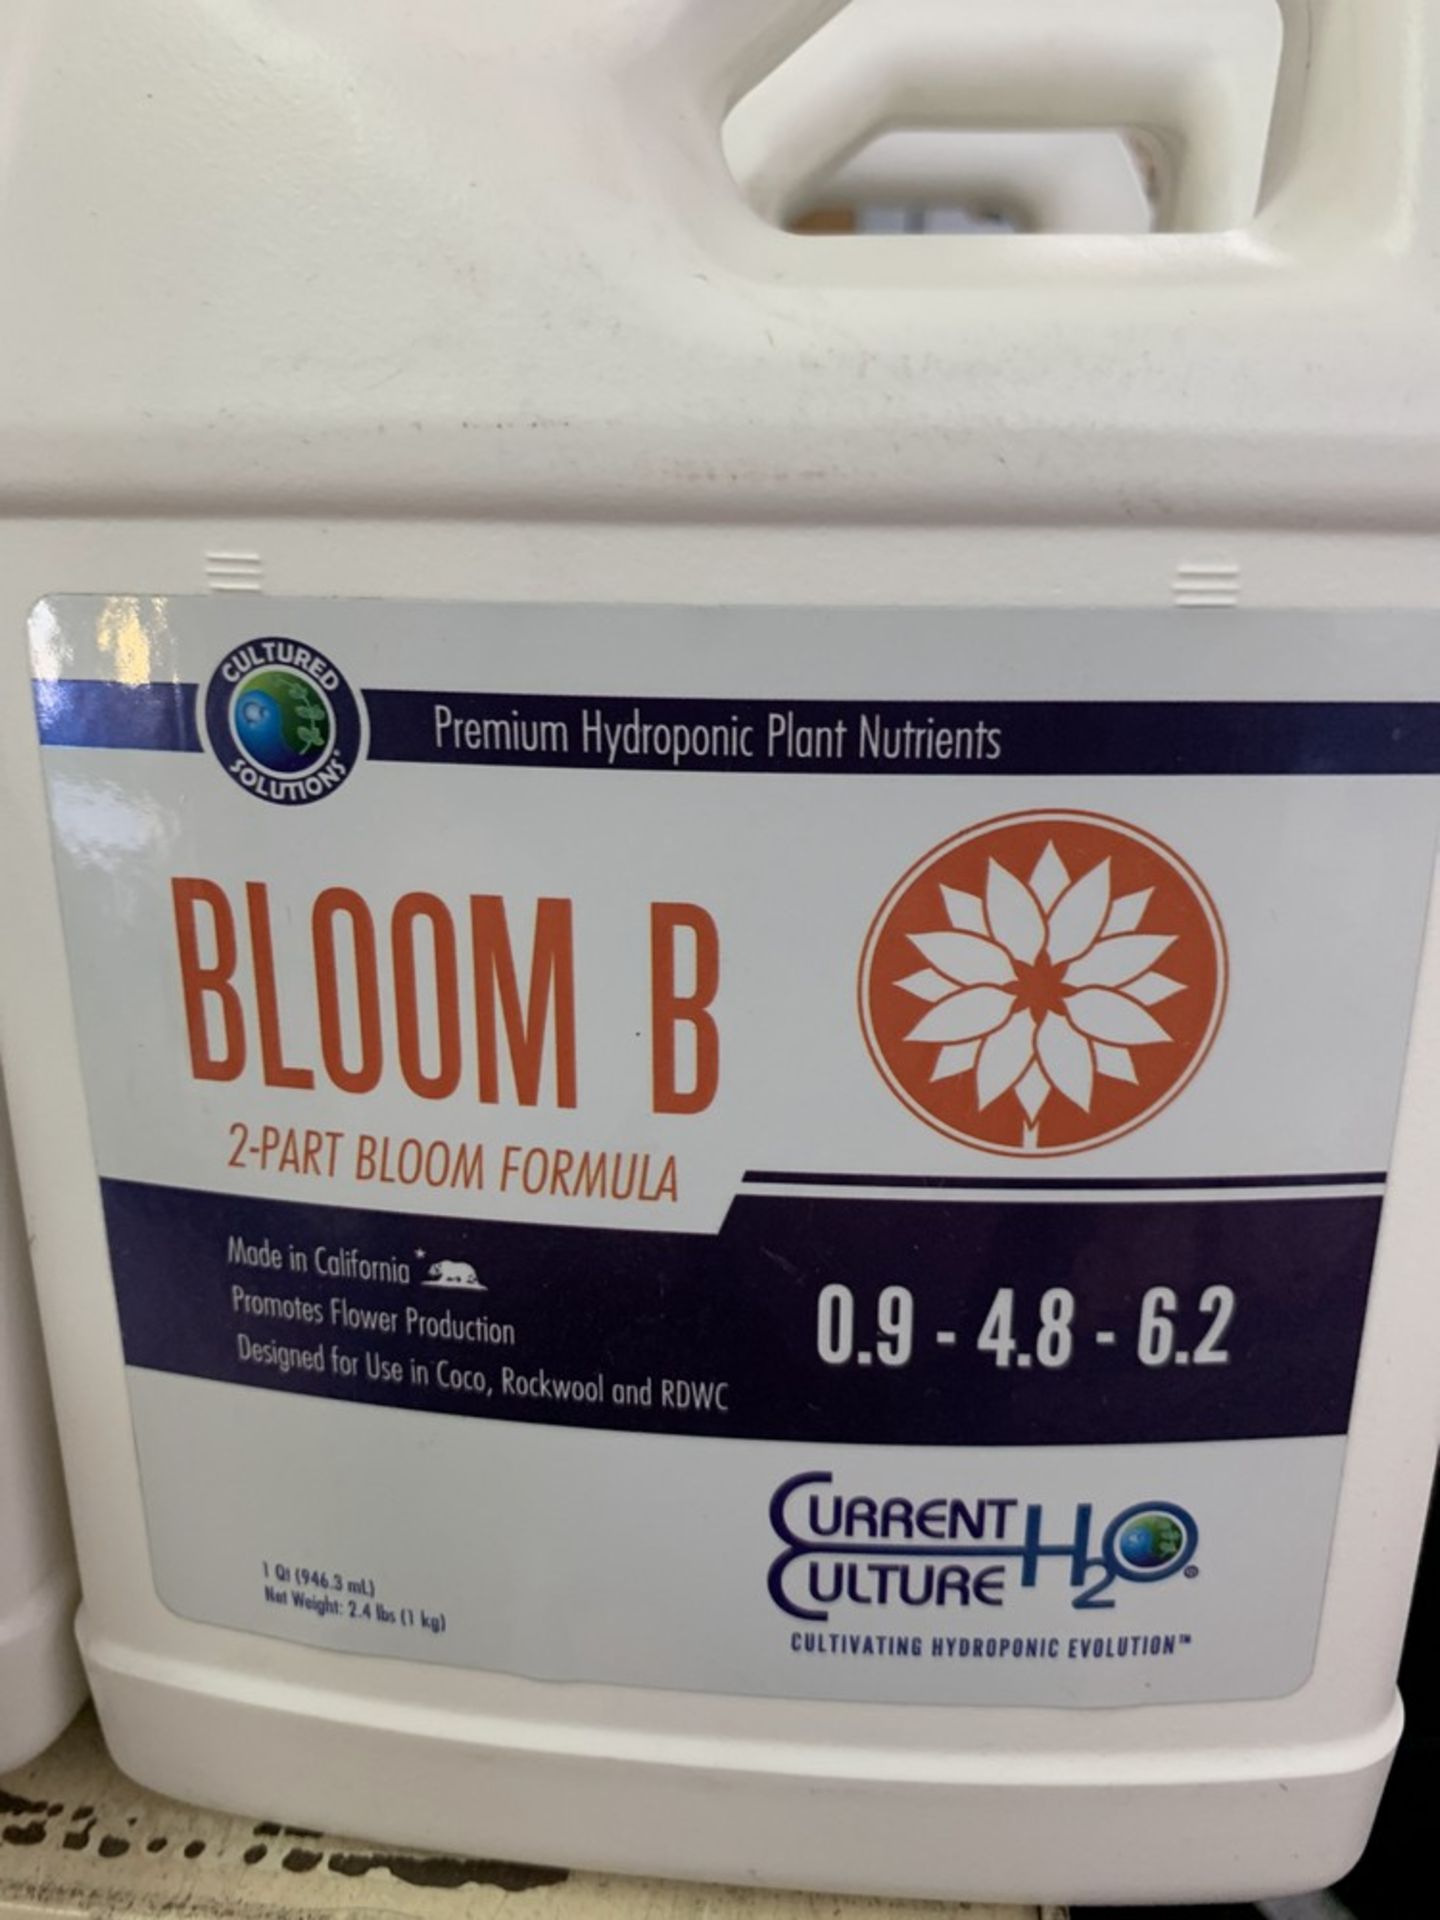 Current Culture - Bloom B